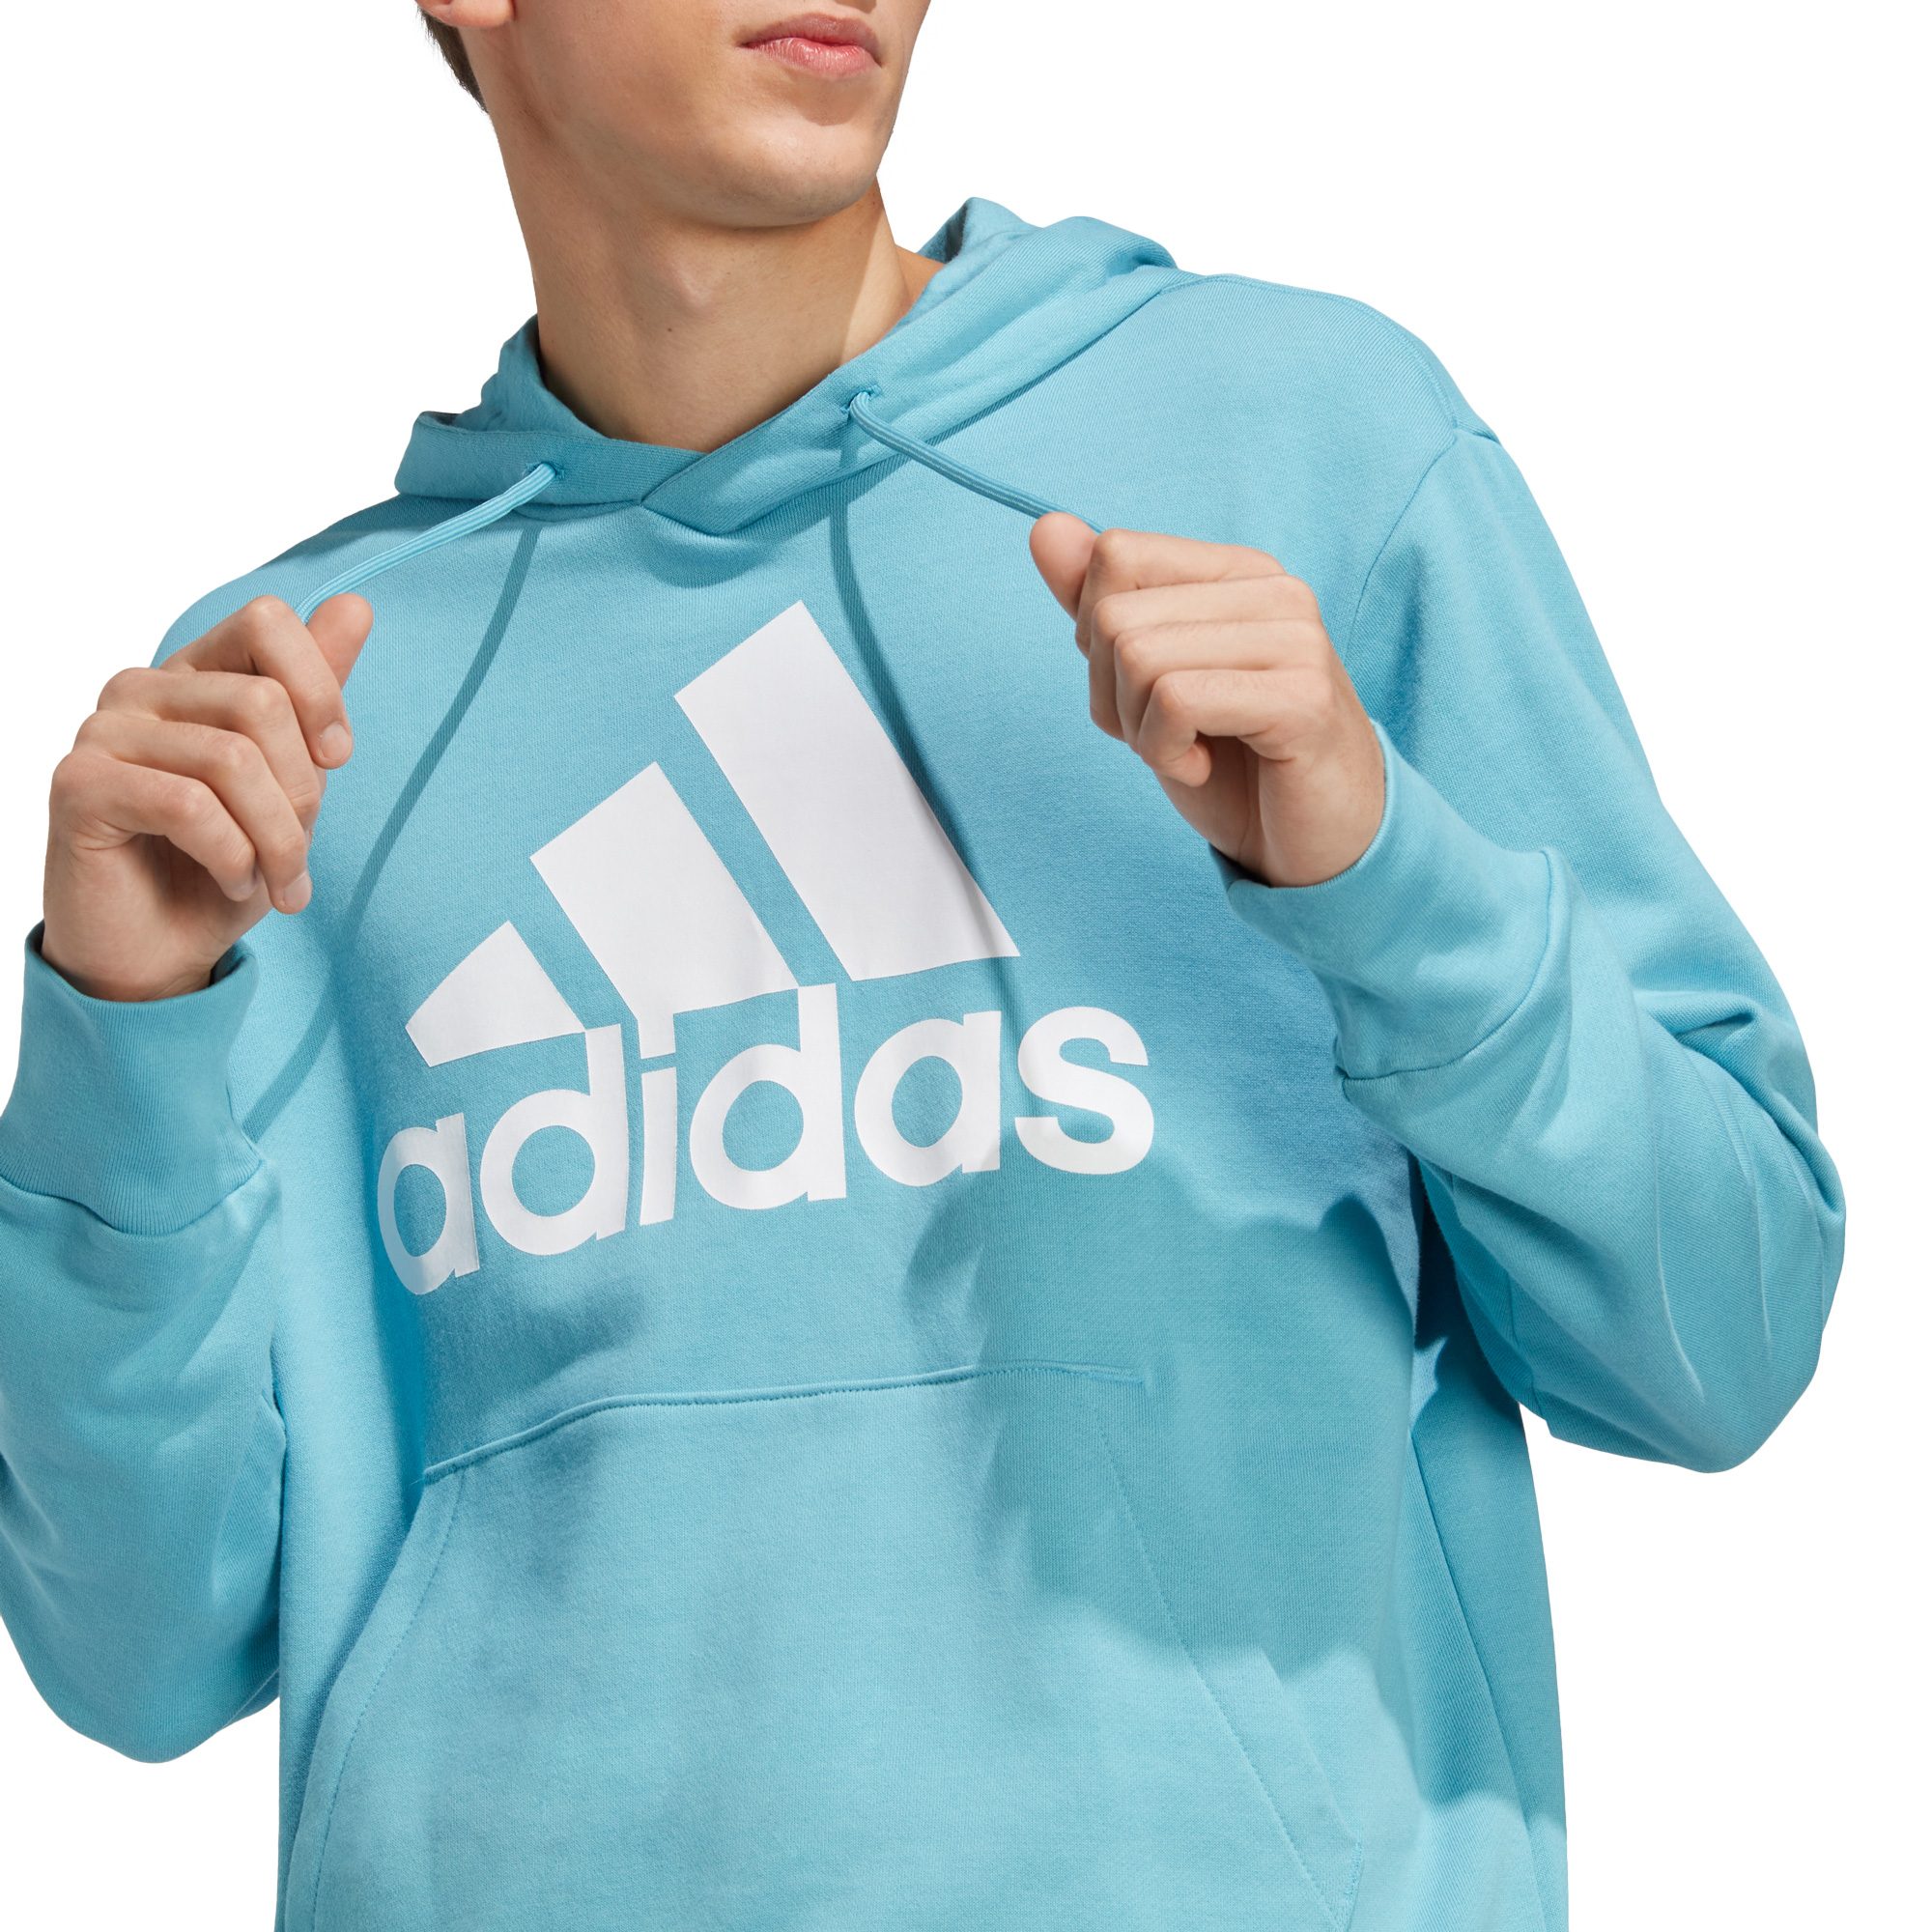 adidas - Essentials French Bittl im Terry Herren Logo Sport Shop blue Hoodie preloved kaufen Big